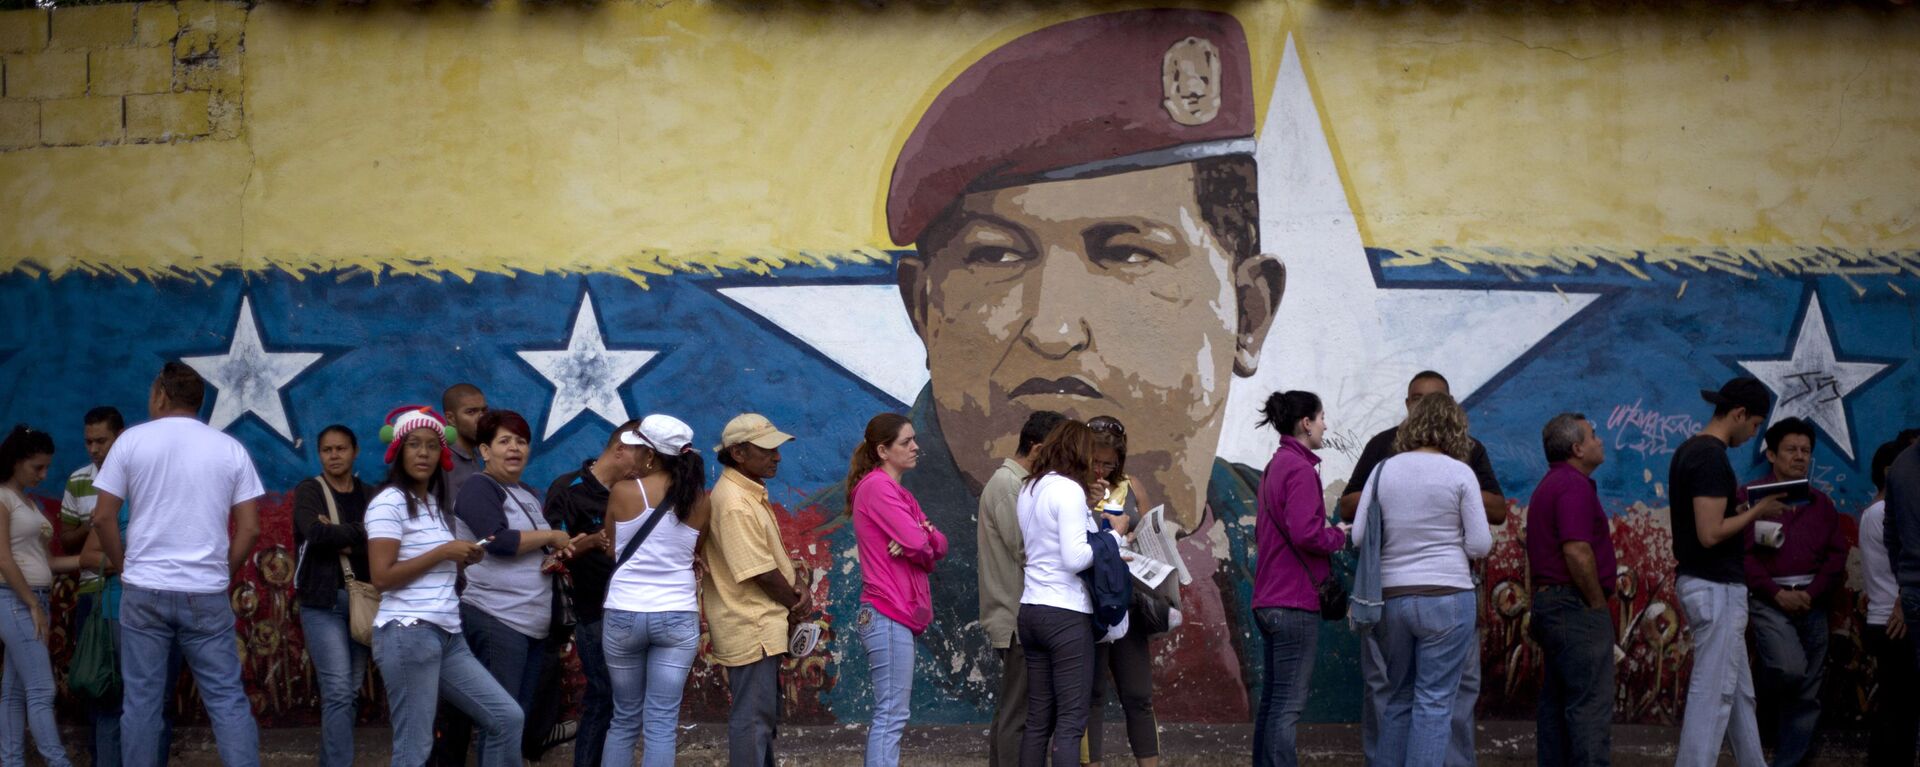 Venezuelanos fazem fila para participar das eleições em seu país em frente a muro com a imagem do ex-presidente Hugo Chávez - Sputnik Brasil, 1920, 28.03.2024